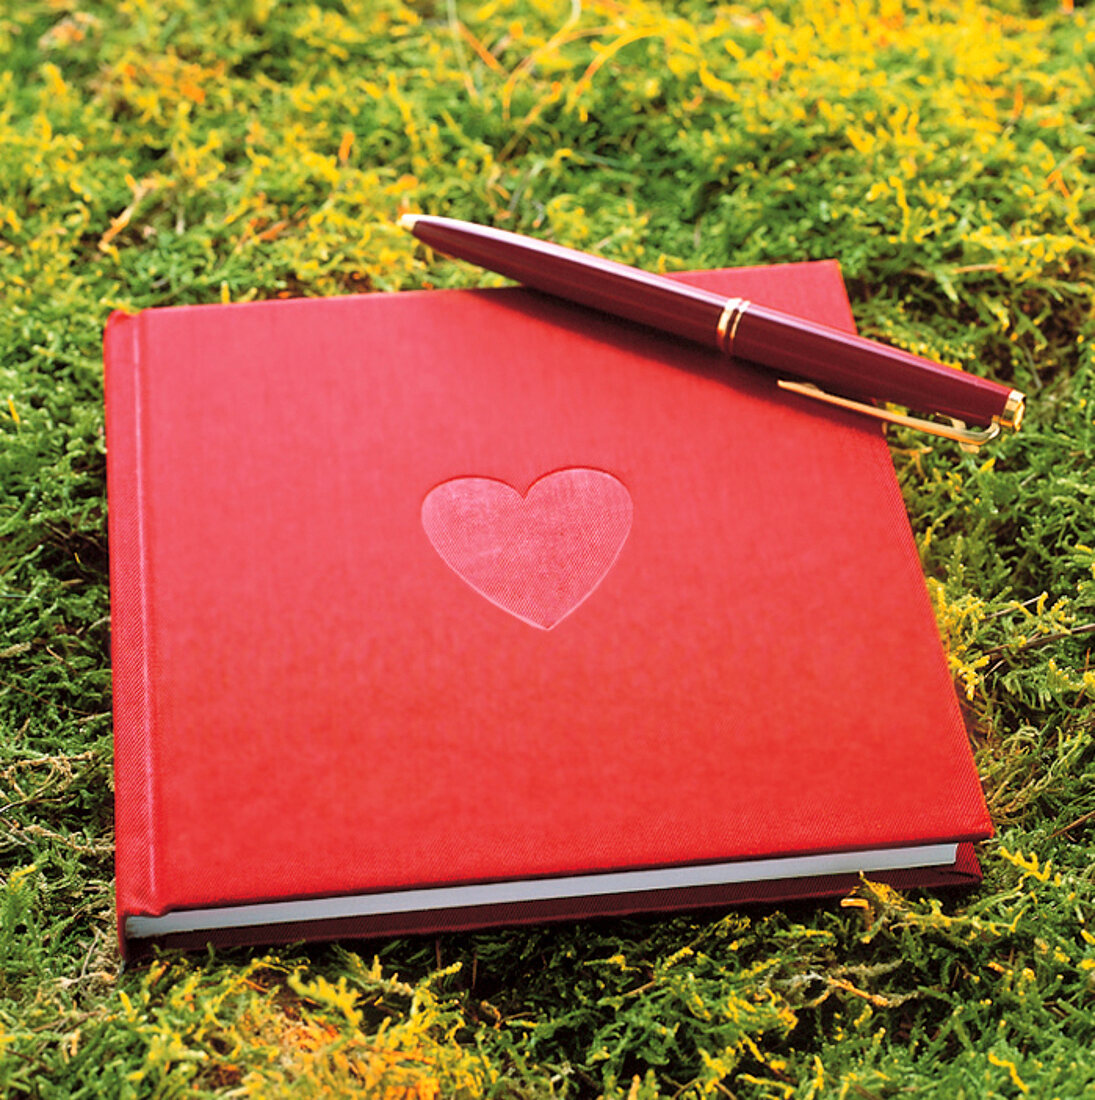 Tagebuch in Rot mit Vertiefung in Herzform + Schreiber liegen im Moos